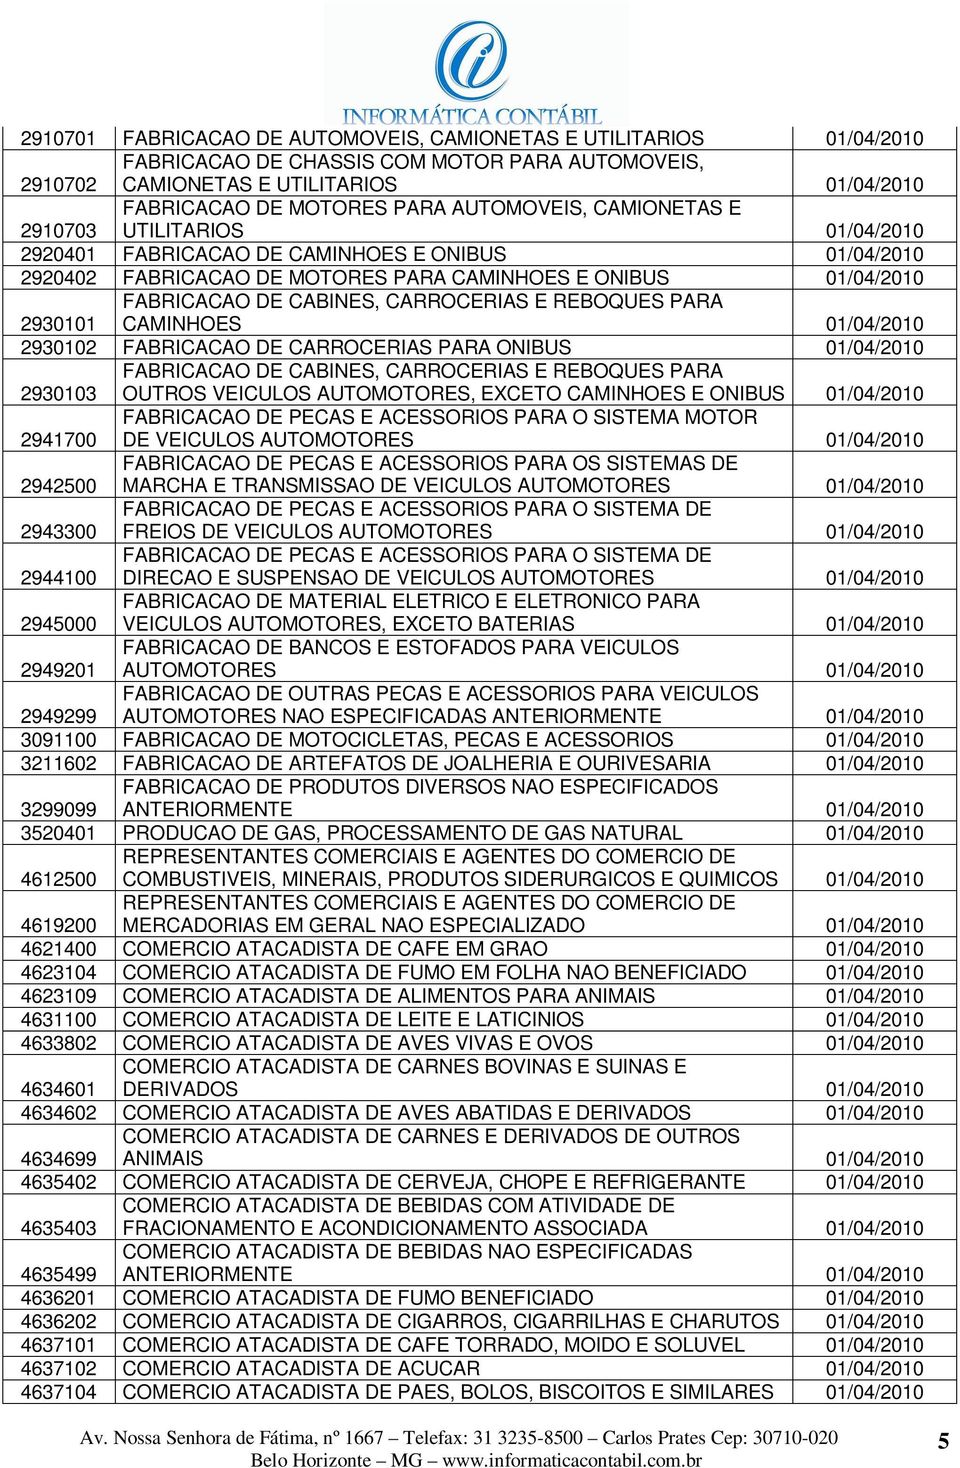 CARROCERIAS E REBOQUES PARA CAMINHOES 01/04/2010 2930102 FABRICACAO DE CARROCERIAS PARA ONIBUS 01/04/2010 2930103 FABRICACAO DE CABINES, CARROCERIAS E REBOQUES PARA OUTROS VEICULOS AUTOMOTORES,